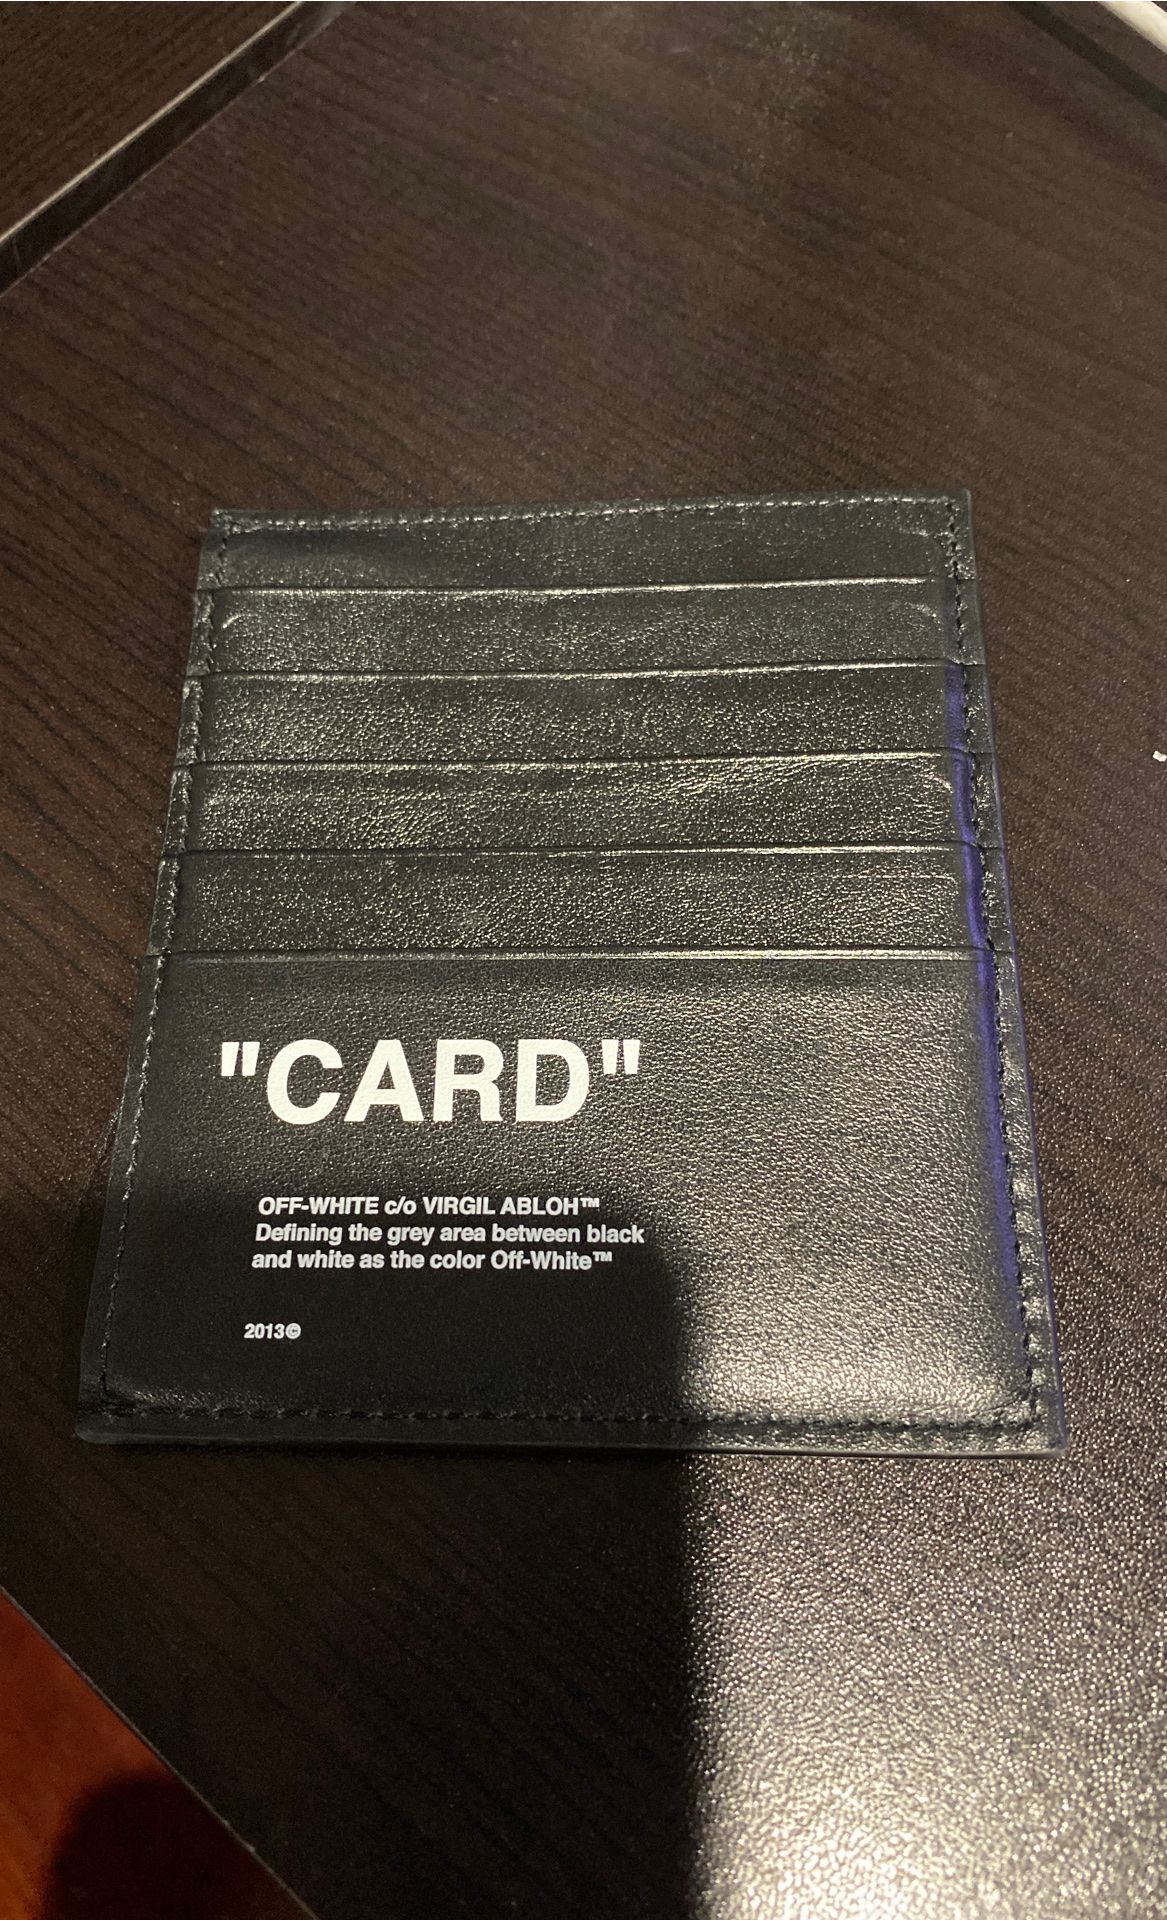 Off-White Card Holder